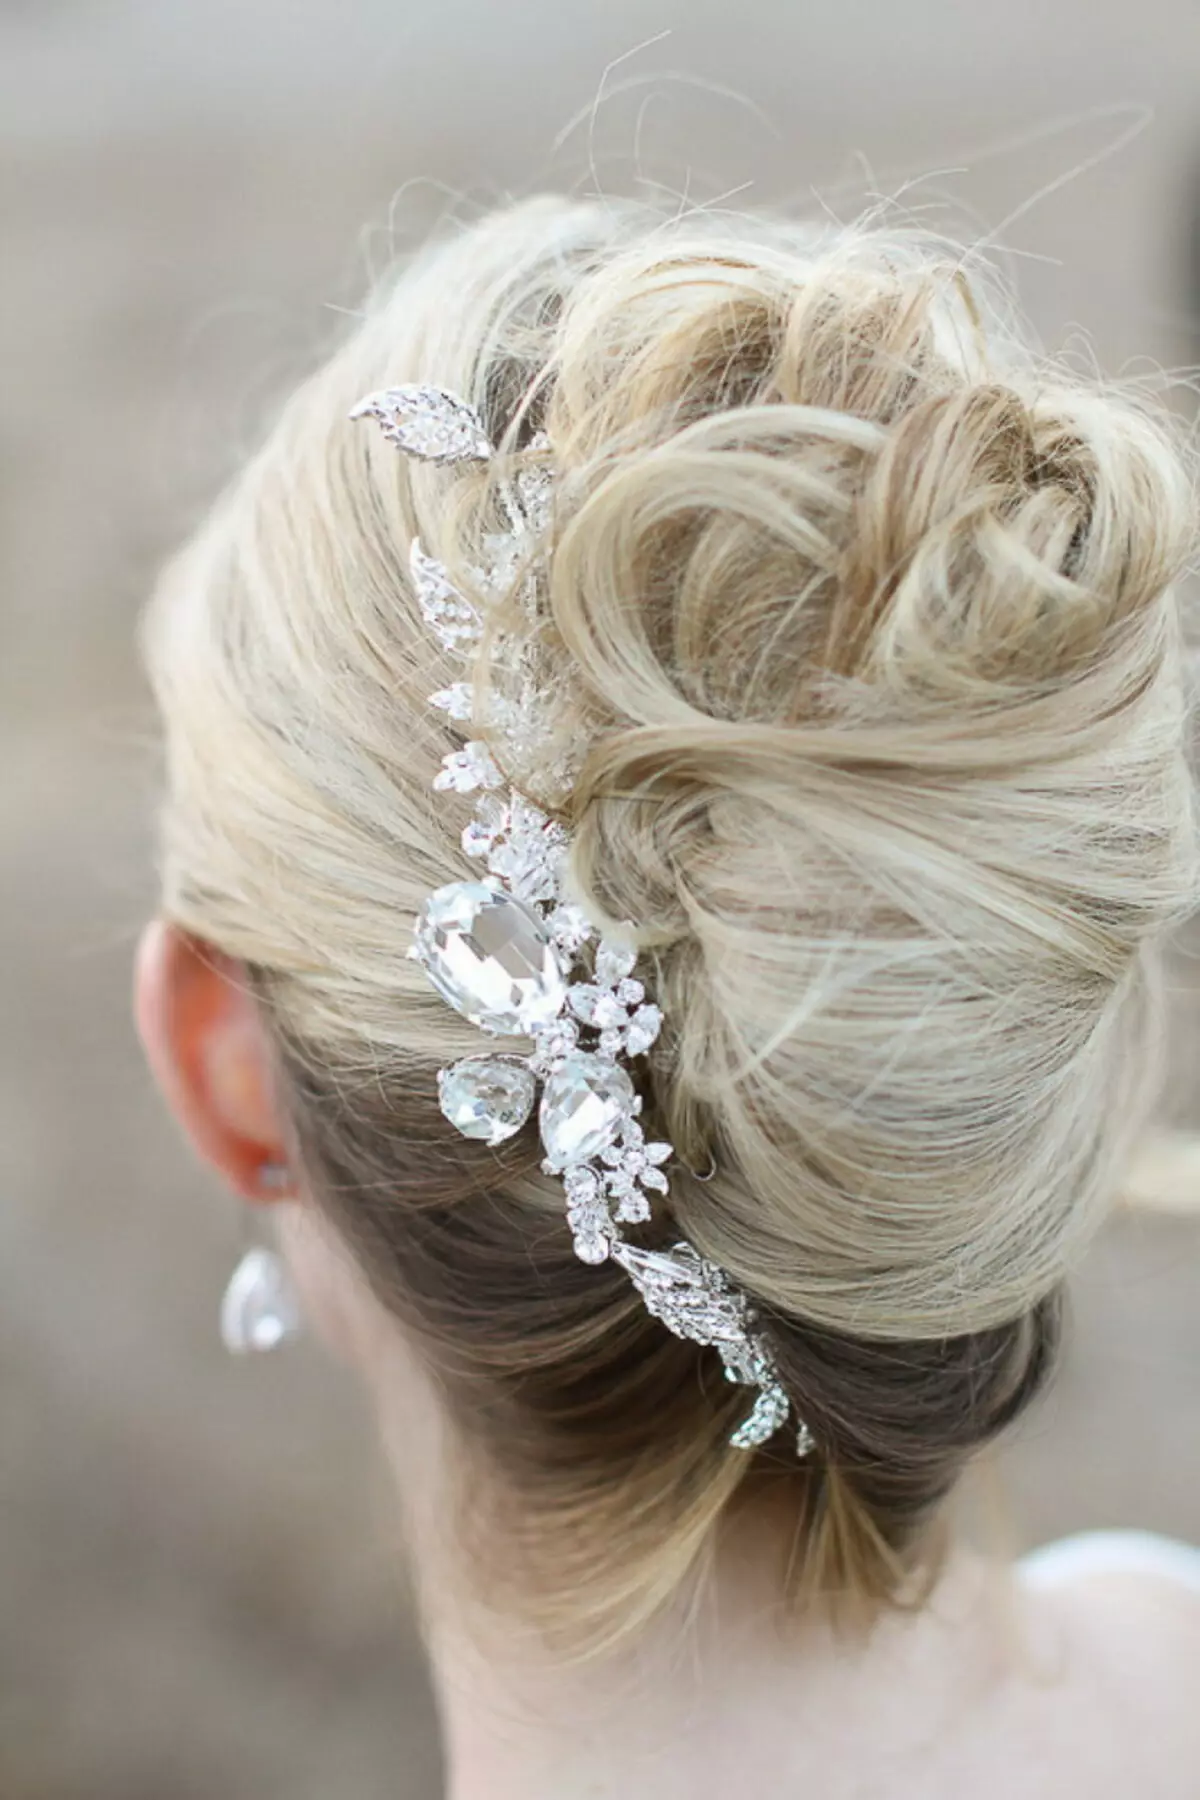 婚礼发型（109张照片）：新娘为新娘的婚礼最美丽的发型，高女性造型与黑发的花圈 7952_36